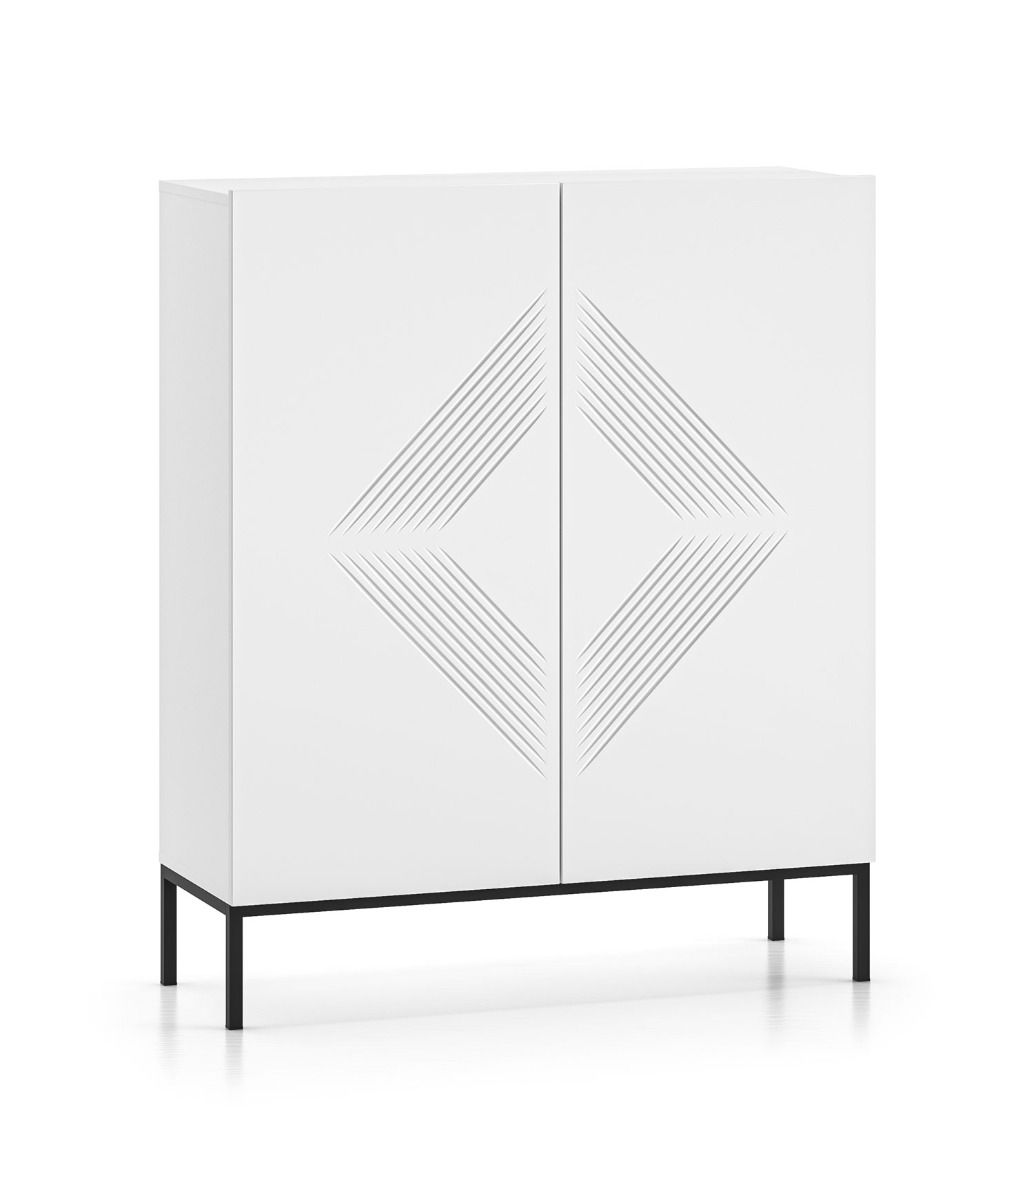 Robuste Kommode mit Beinen aus Metall Taos 03, Farbe: Weiß matt, Maße: 120 x 100 x 37 cm, mit 2 Türen und drei Fächer, modernes und einfaches Design